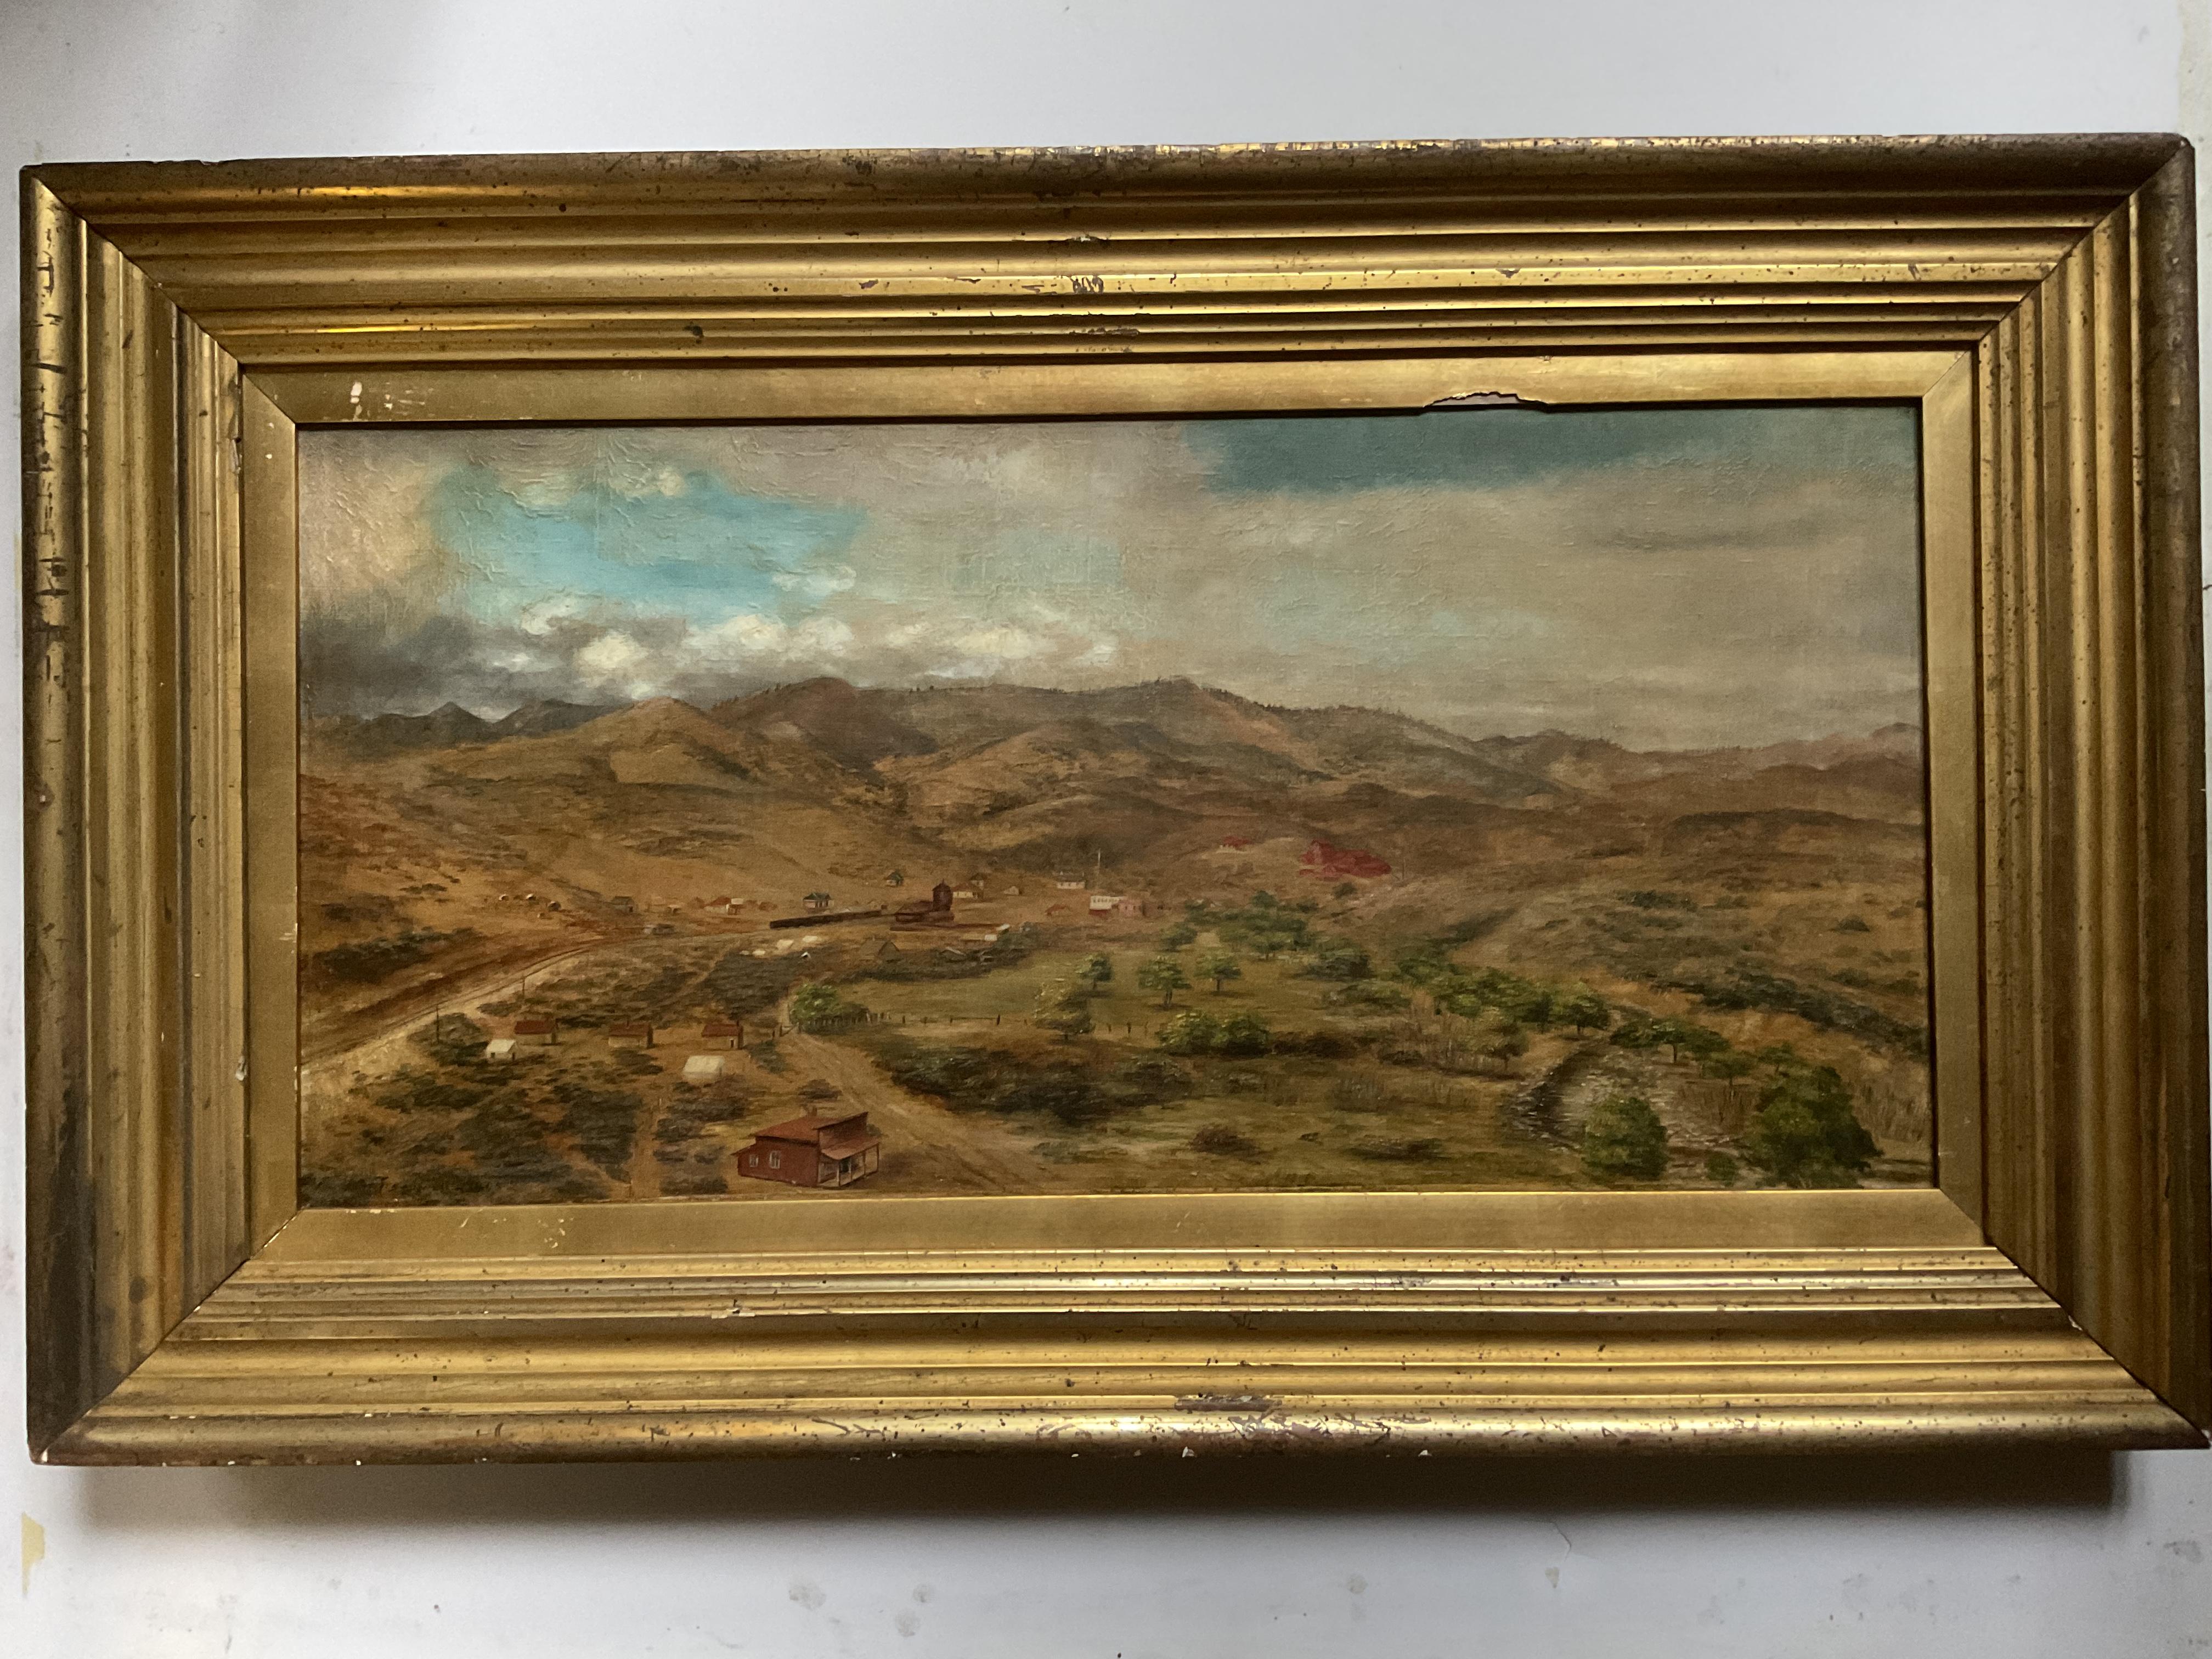 Rare peinture à l'huile de l'artiste répertorié M Treadwell représentant des villes minières de Californie ou de l'Ouest